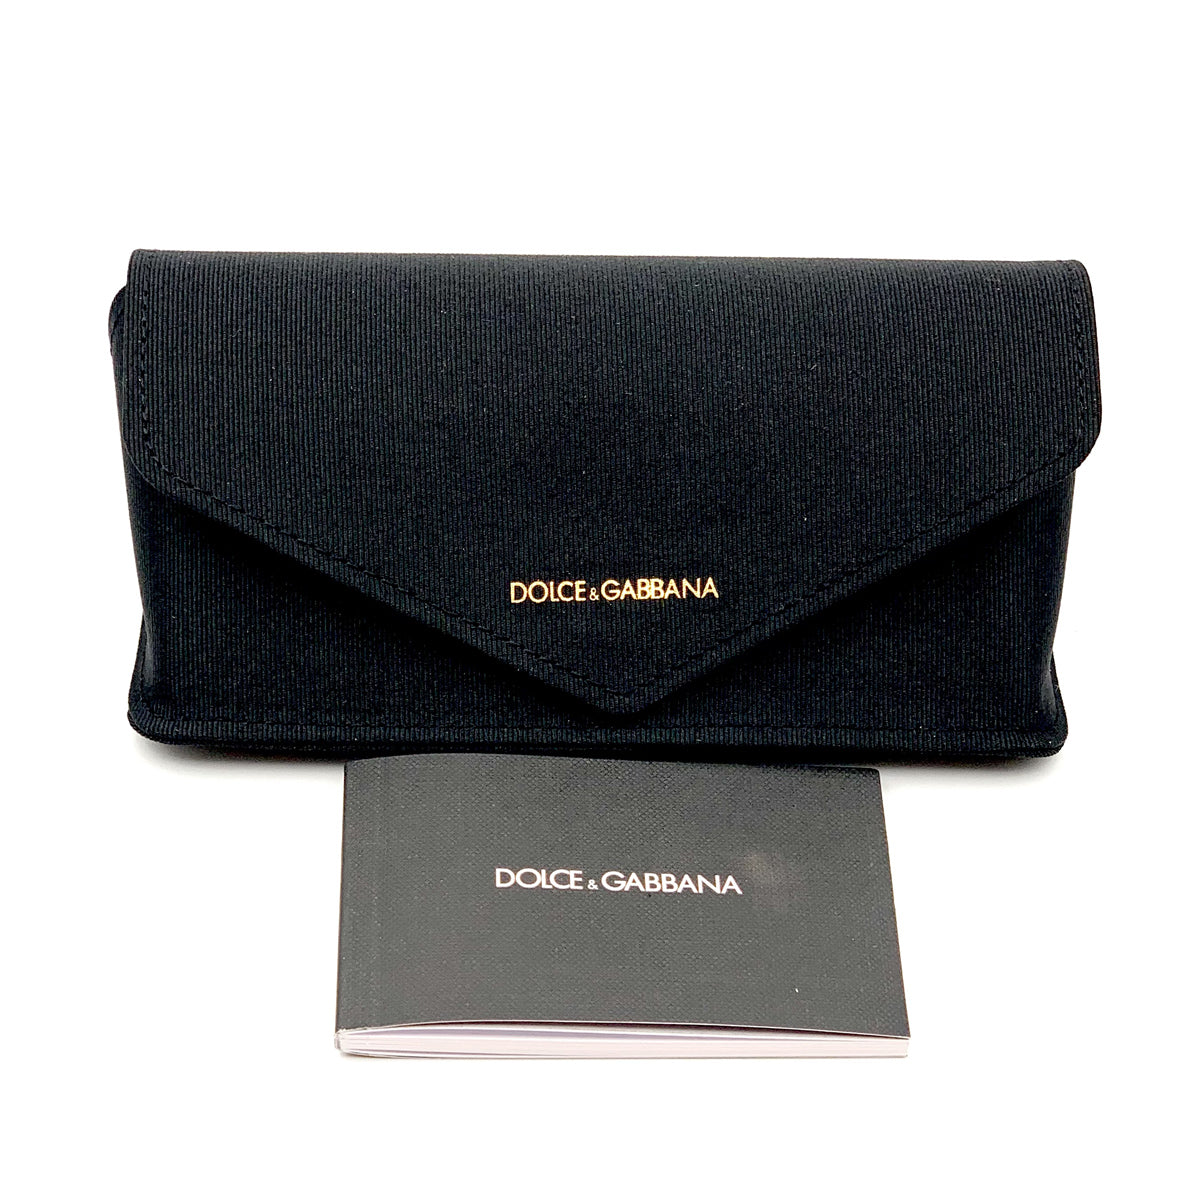 DG4435 33128V-Occhiali da sole-Dolce & Gabbana-DG Barocco è la nuova collezione di occhiali da sole di Dolce&Gabbana, caratterizzata da forme moderne che riflettono un'estetica futurista, minimale ed iconica. È una vera e propria dichiarazione di stile con un design audace e contemporaneo per un effetto glamour. Questo modello presenta una forma cat-eye con linee geometriche in acetato e si distingue per il suo romantico dettaglio barocco su una sola asta, creando un'asimmetria unica nel suo genere. L'altra